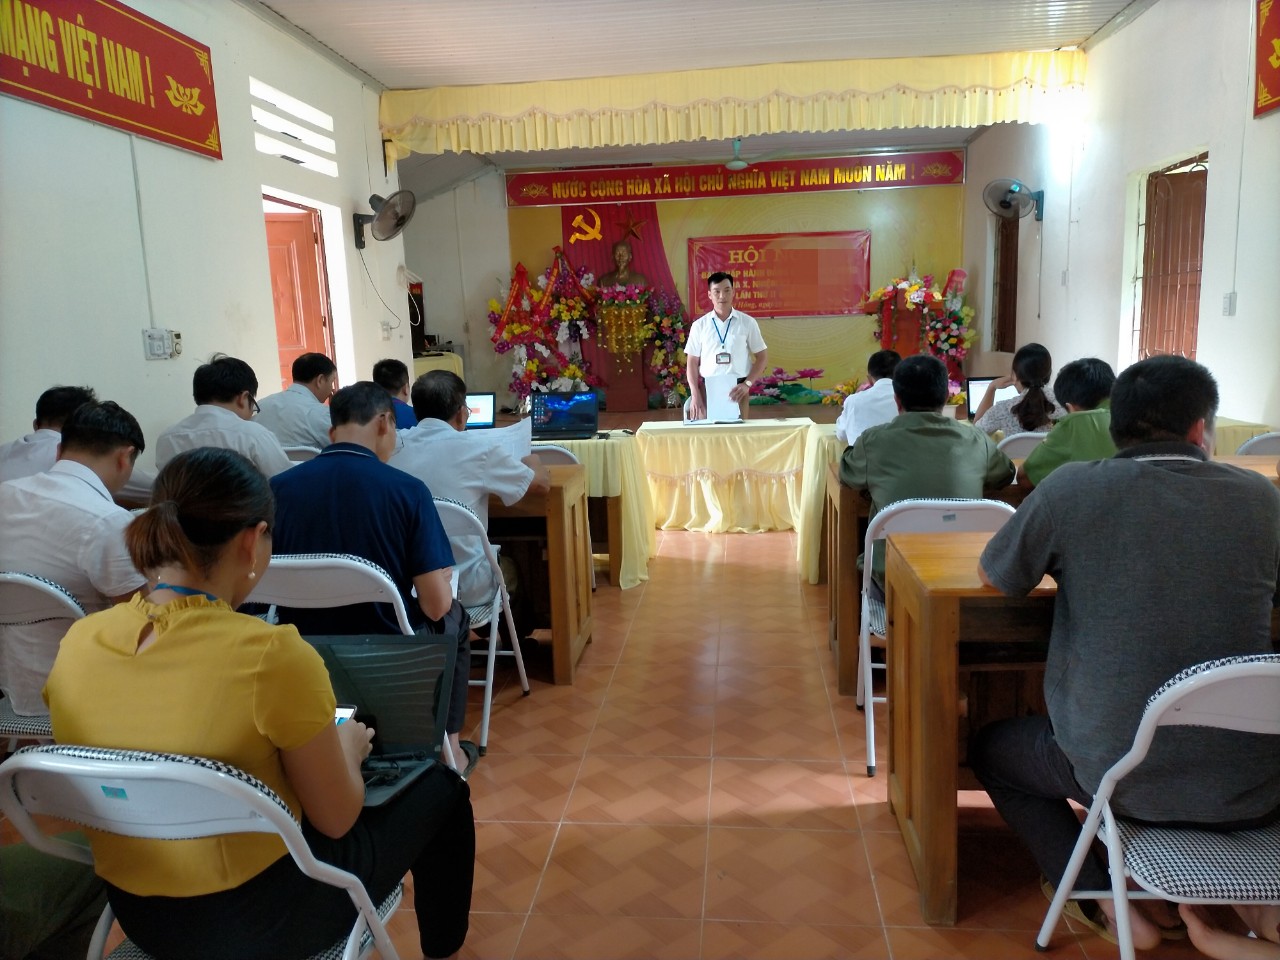 Hội đồng nghĩa vụ quân sự xã Việt Hồng tổ chức họp, triển khai kế hoạch khám sơ tuyển nghĩa vụ Quân sự, nghĩa vụ tham gia Công an nhân dân năm 2020